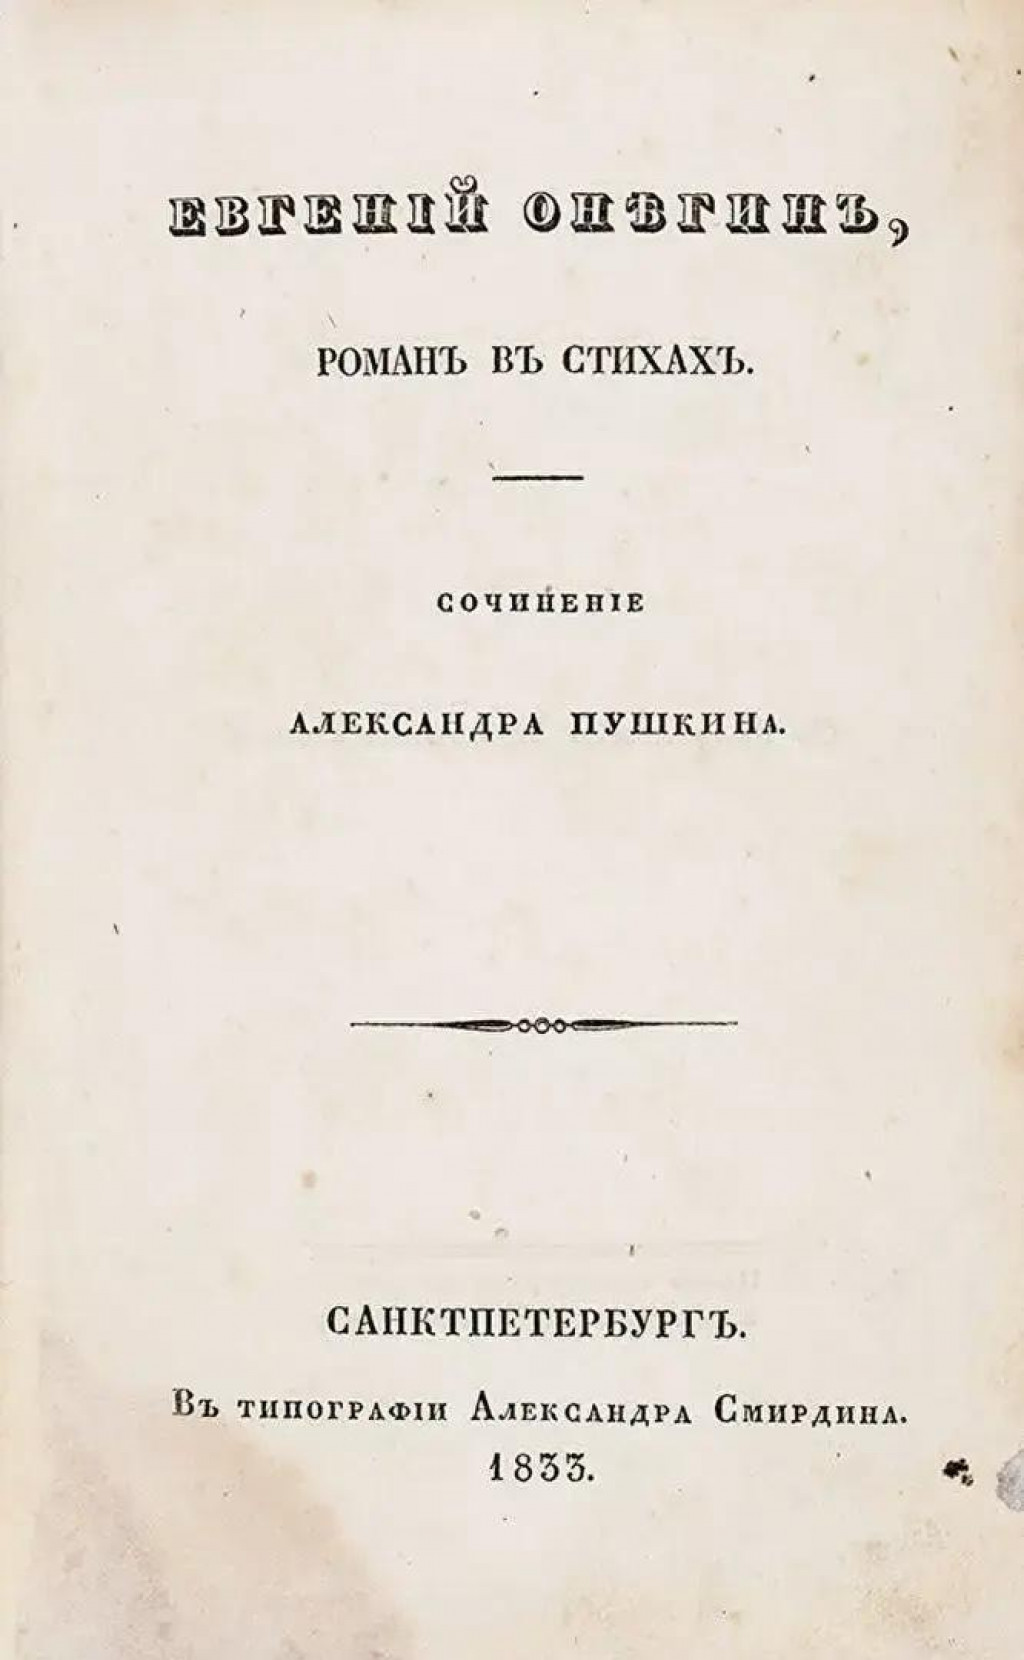 Eugen Onegin, prvé vydanie knihy z roku 1833. FOTO: Wikimedia